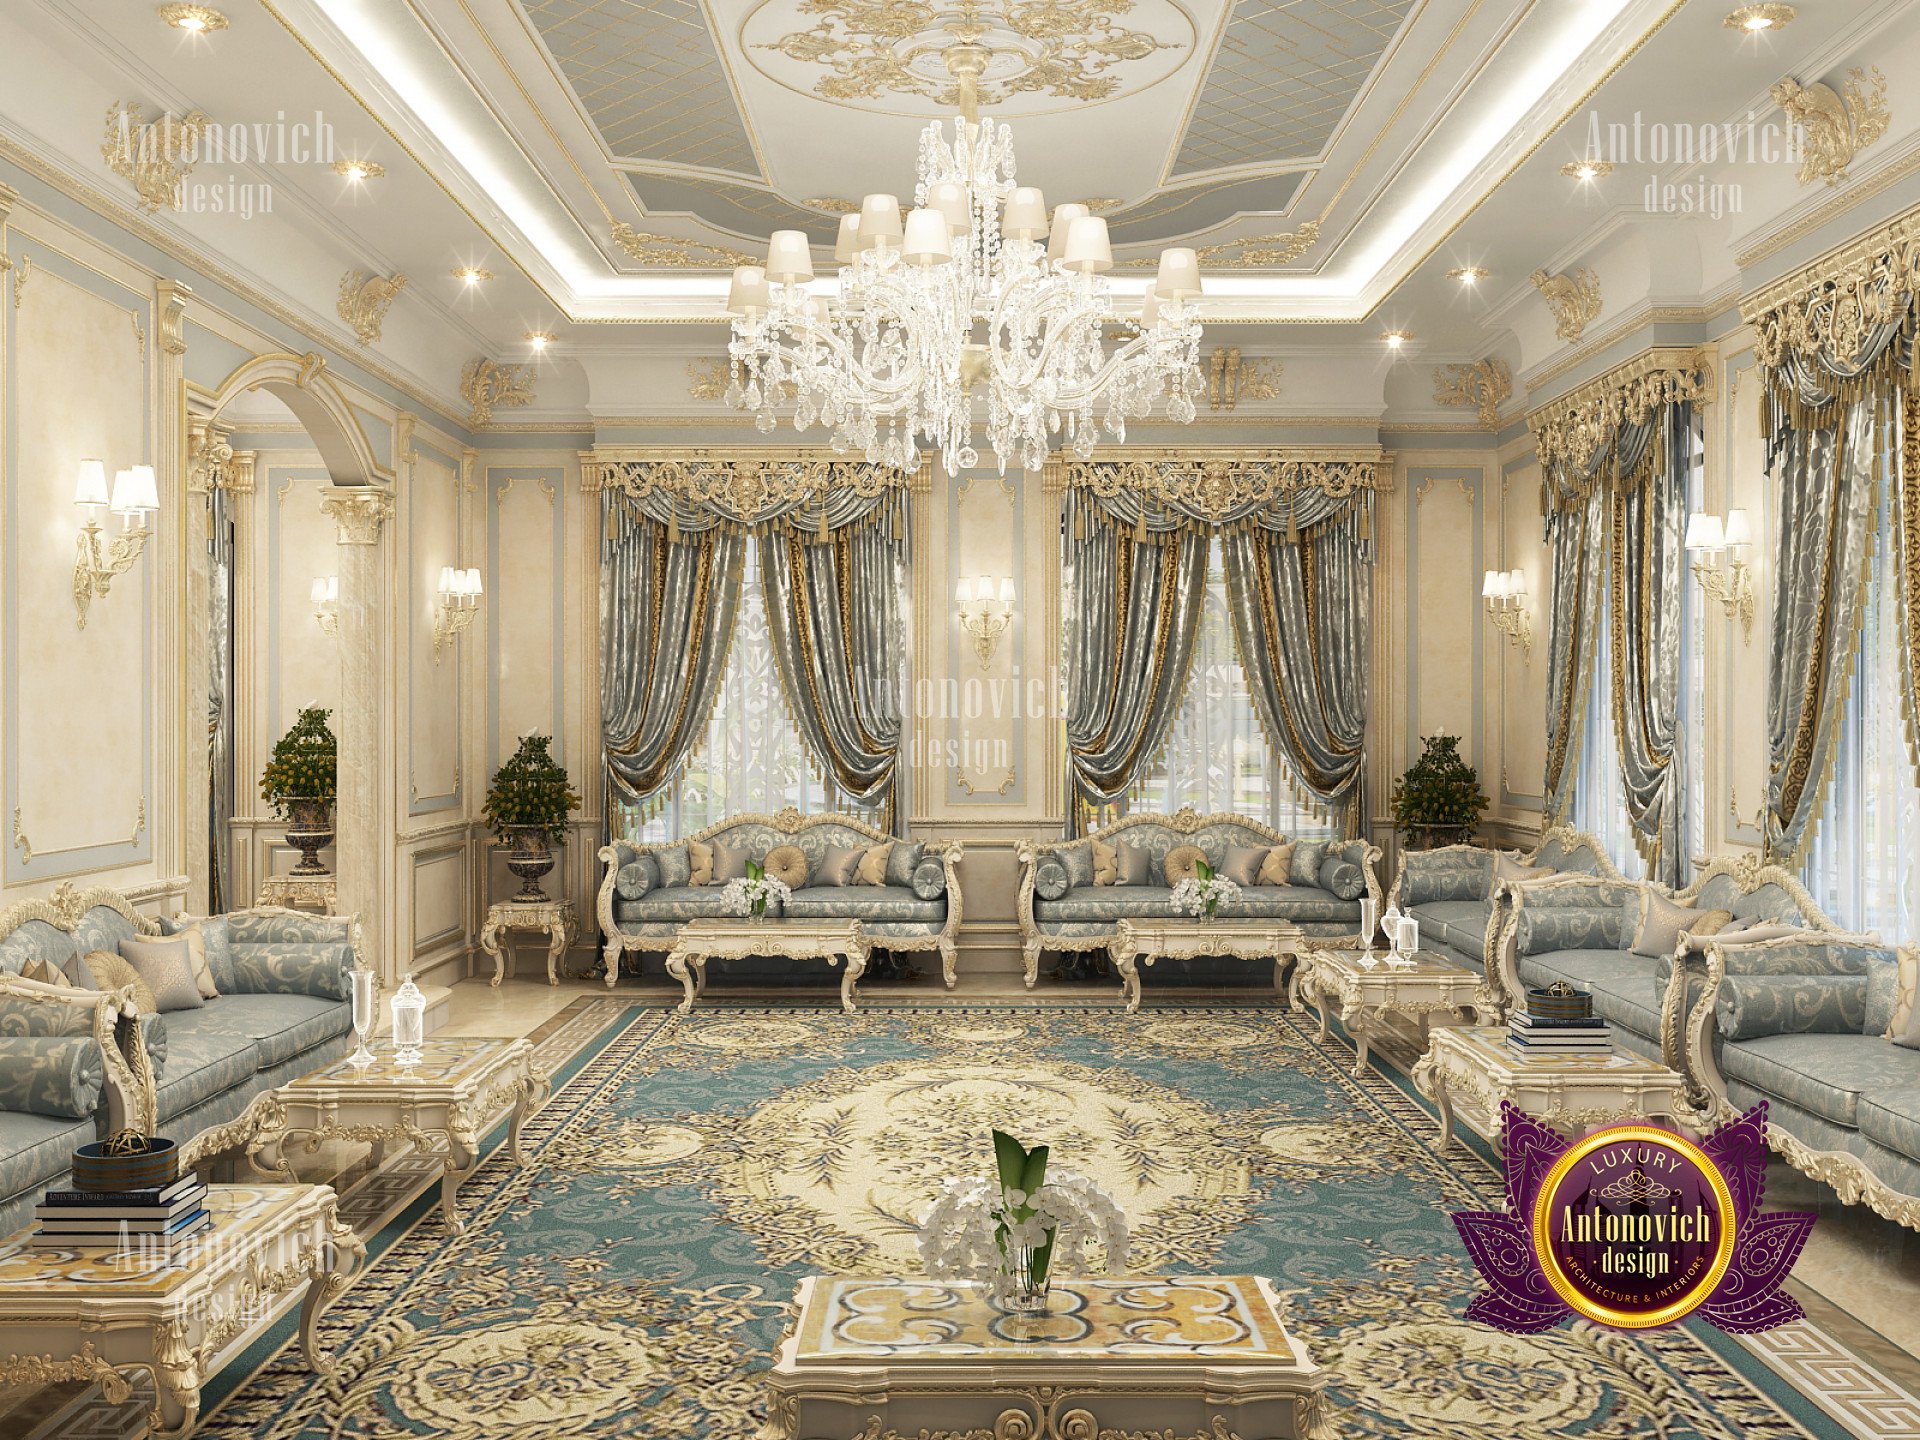 Luxury villa interiors